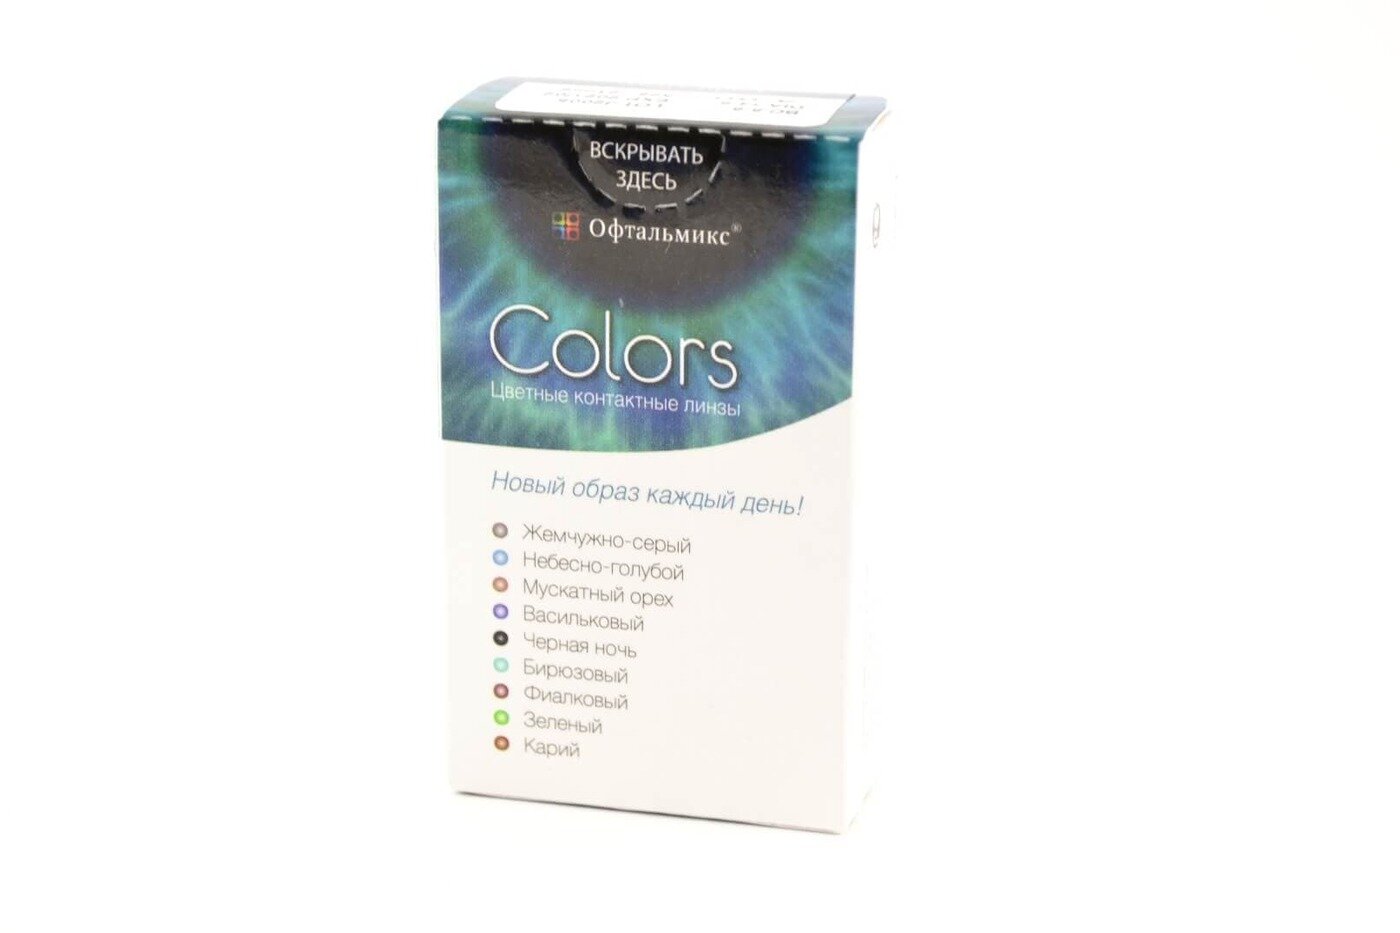 Офтальмикс Colors New (2 линзы)-0.00 R.8.6 Olive(Оливковый)